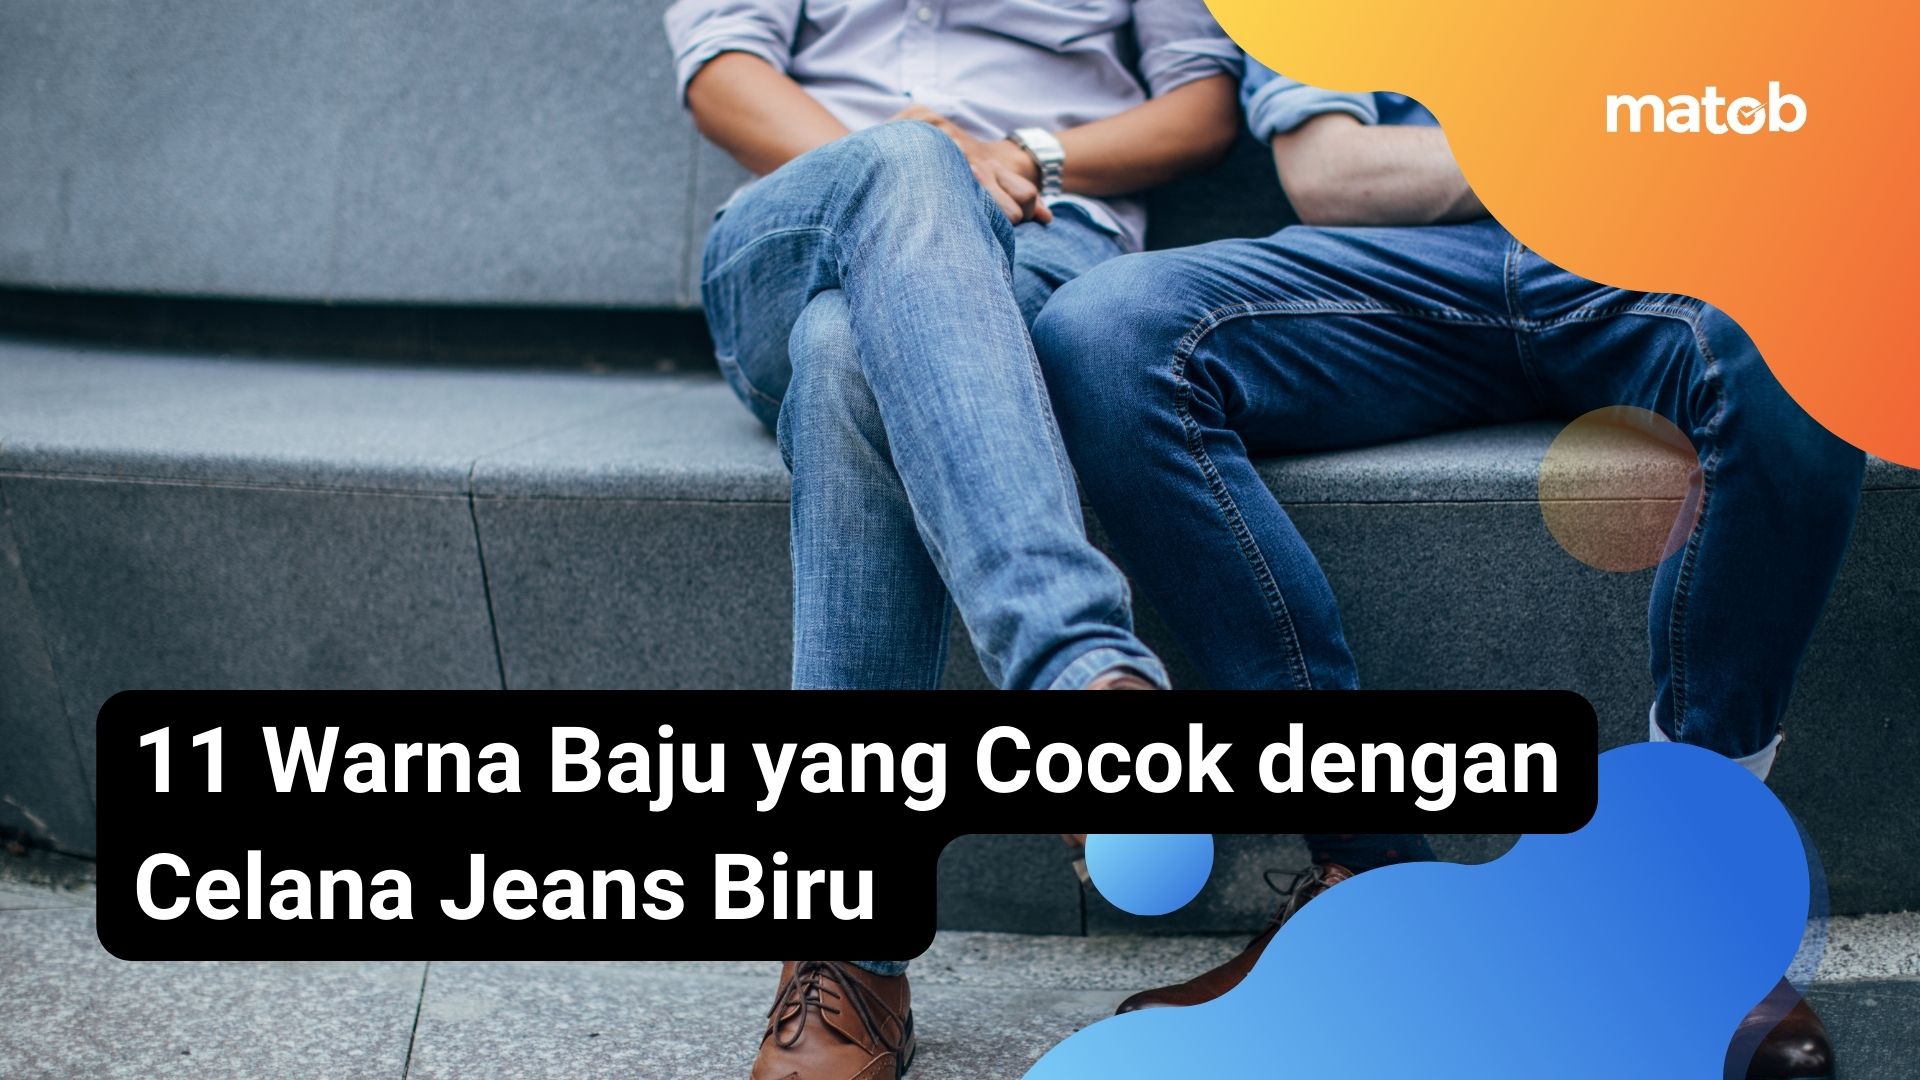 11 Warna Baju yang Cocok dengan Celana Jeans Biru